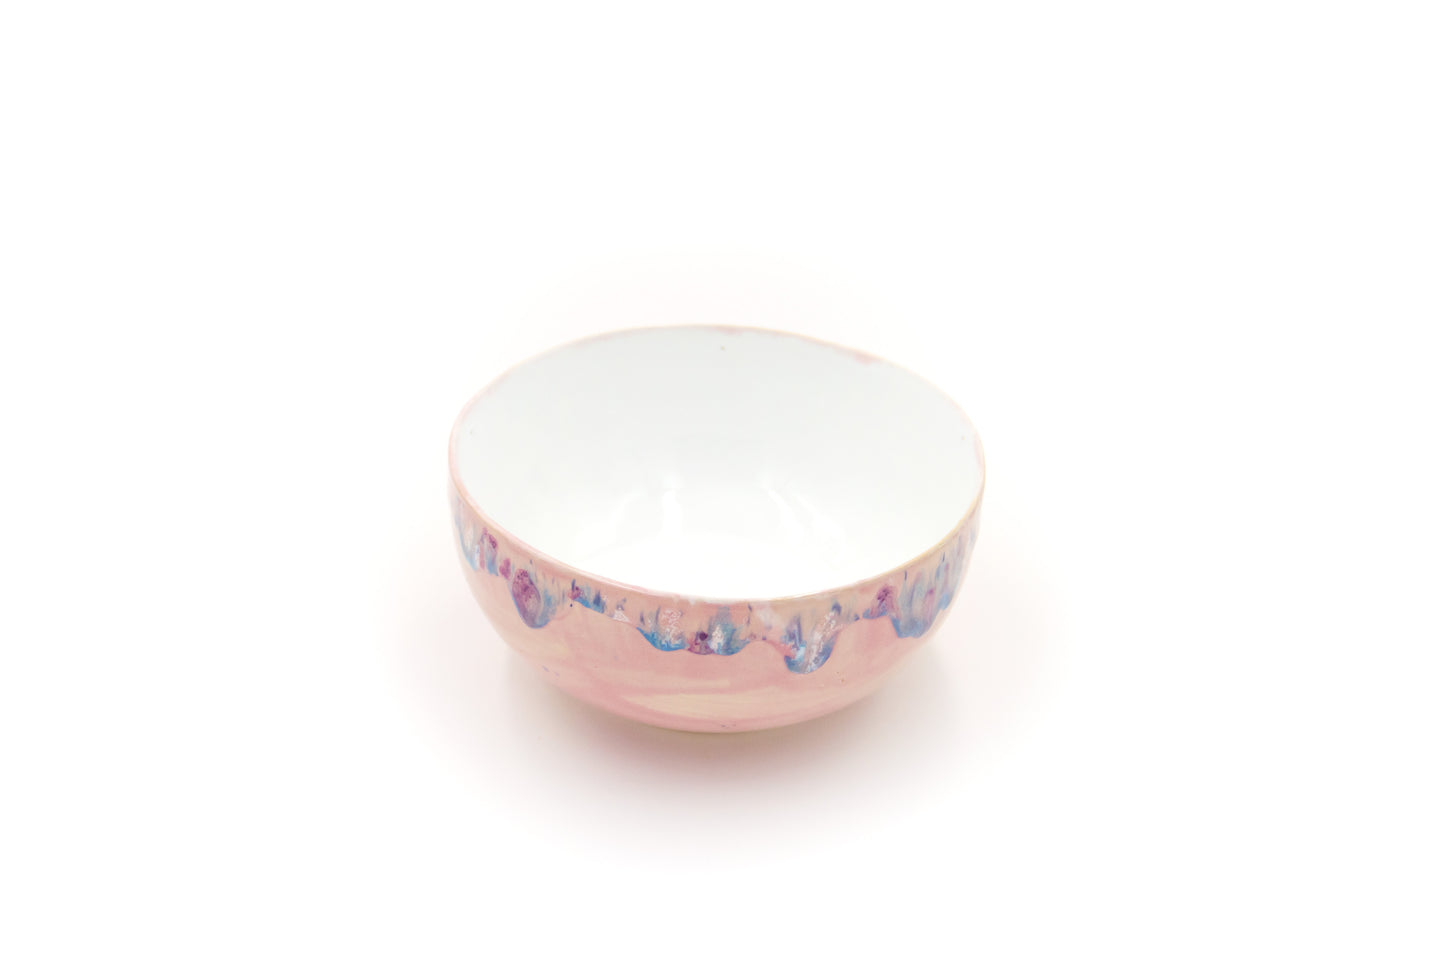 Miska ceramiczna w kolorze biało-różowym